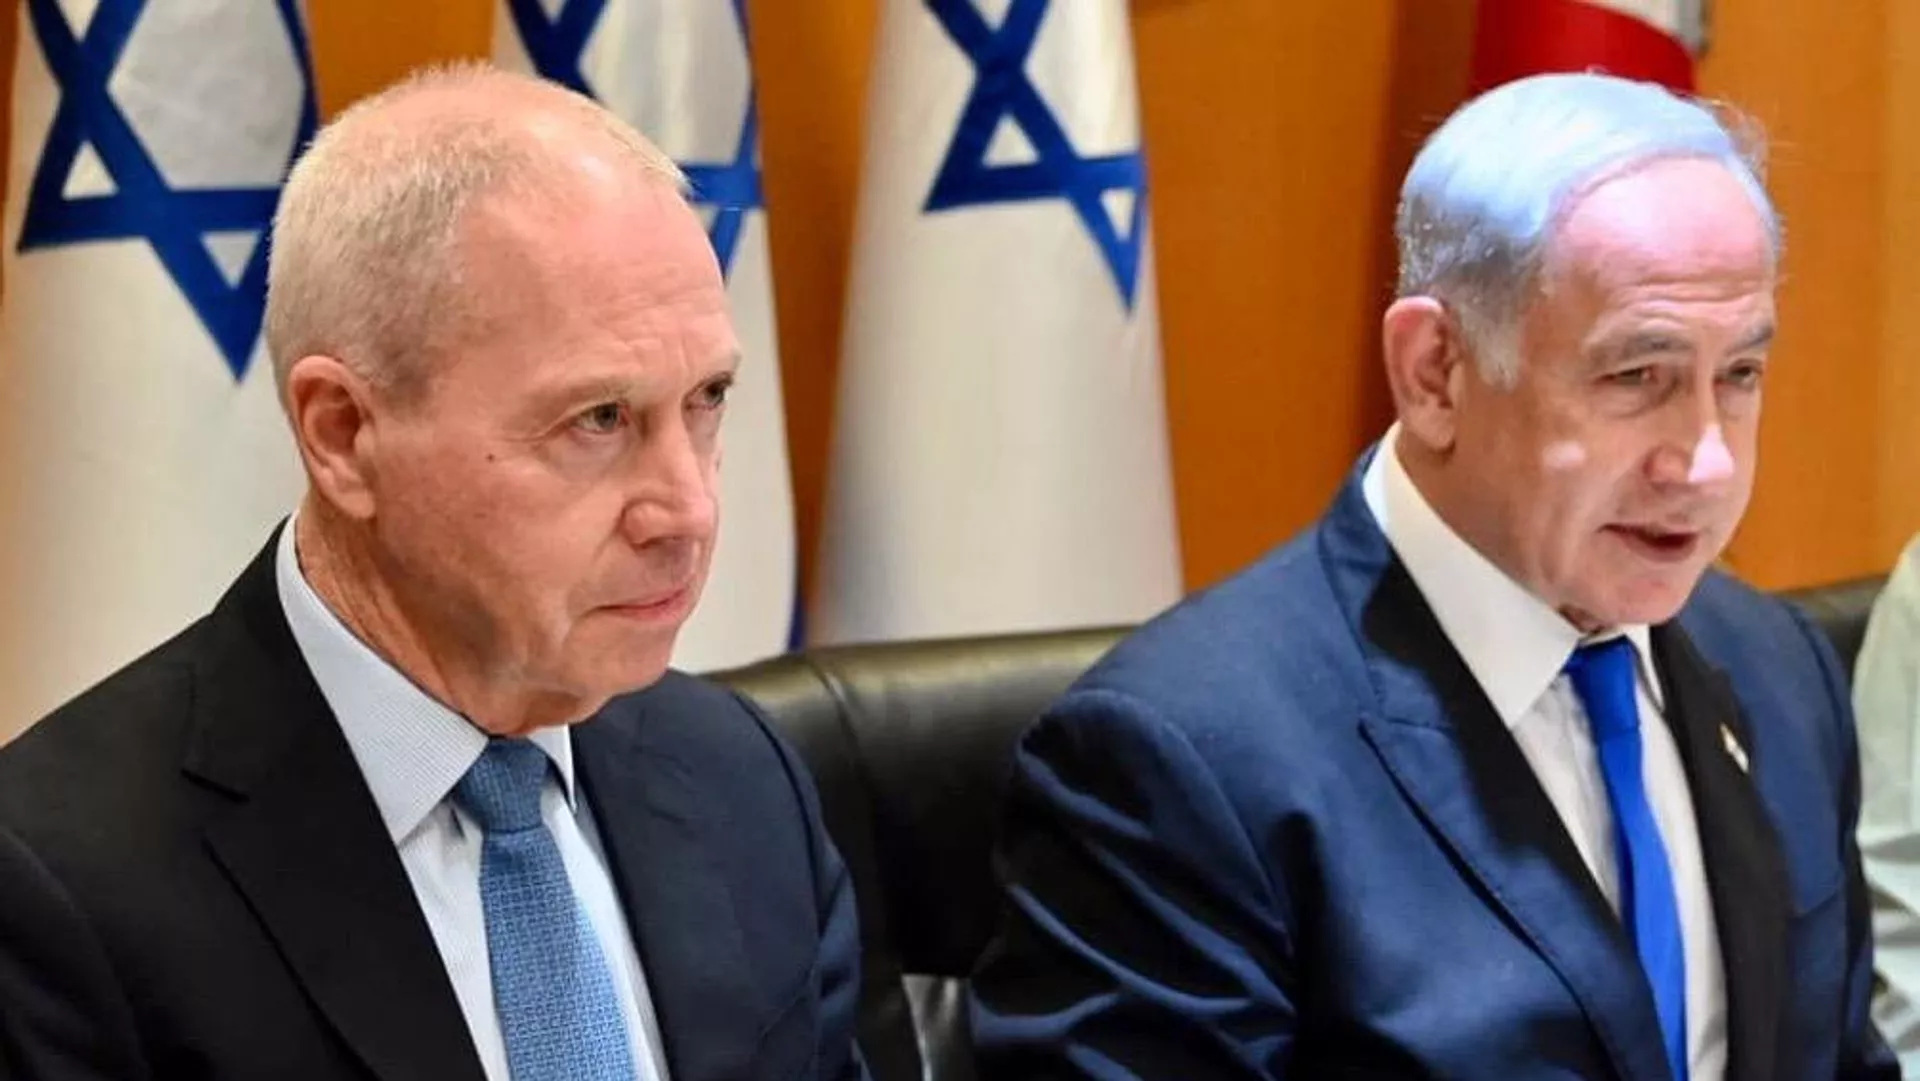 Netanyahu reinstala al ministro de Defensa en Israel luego de haberlo destituido